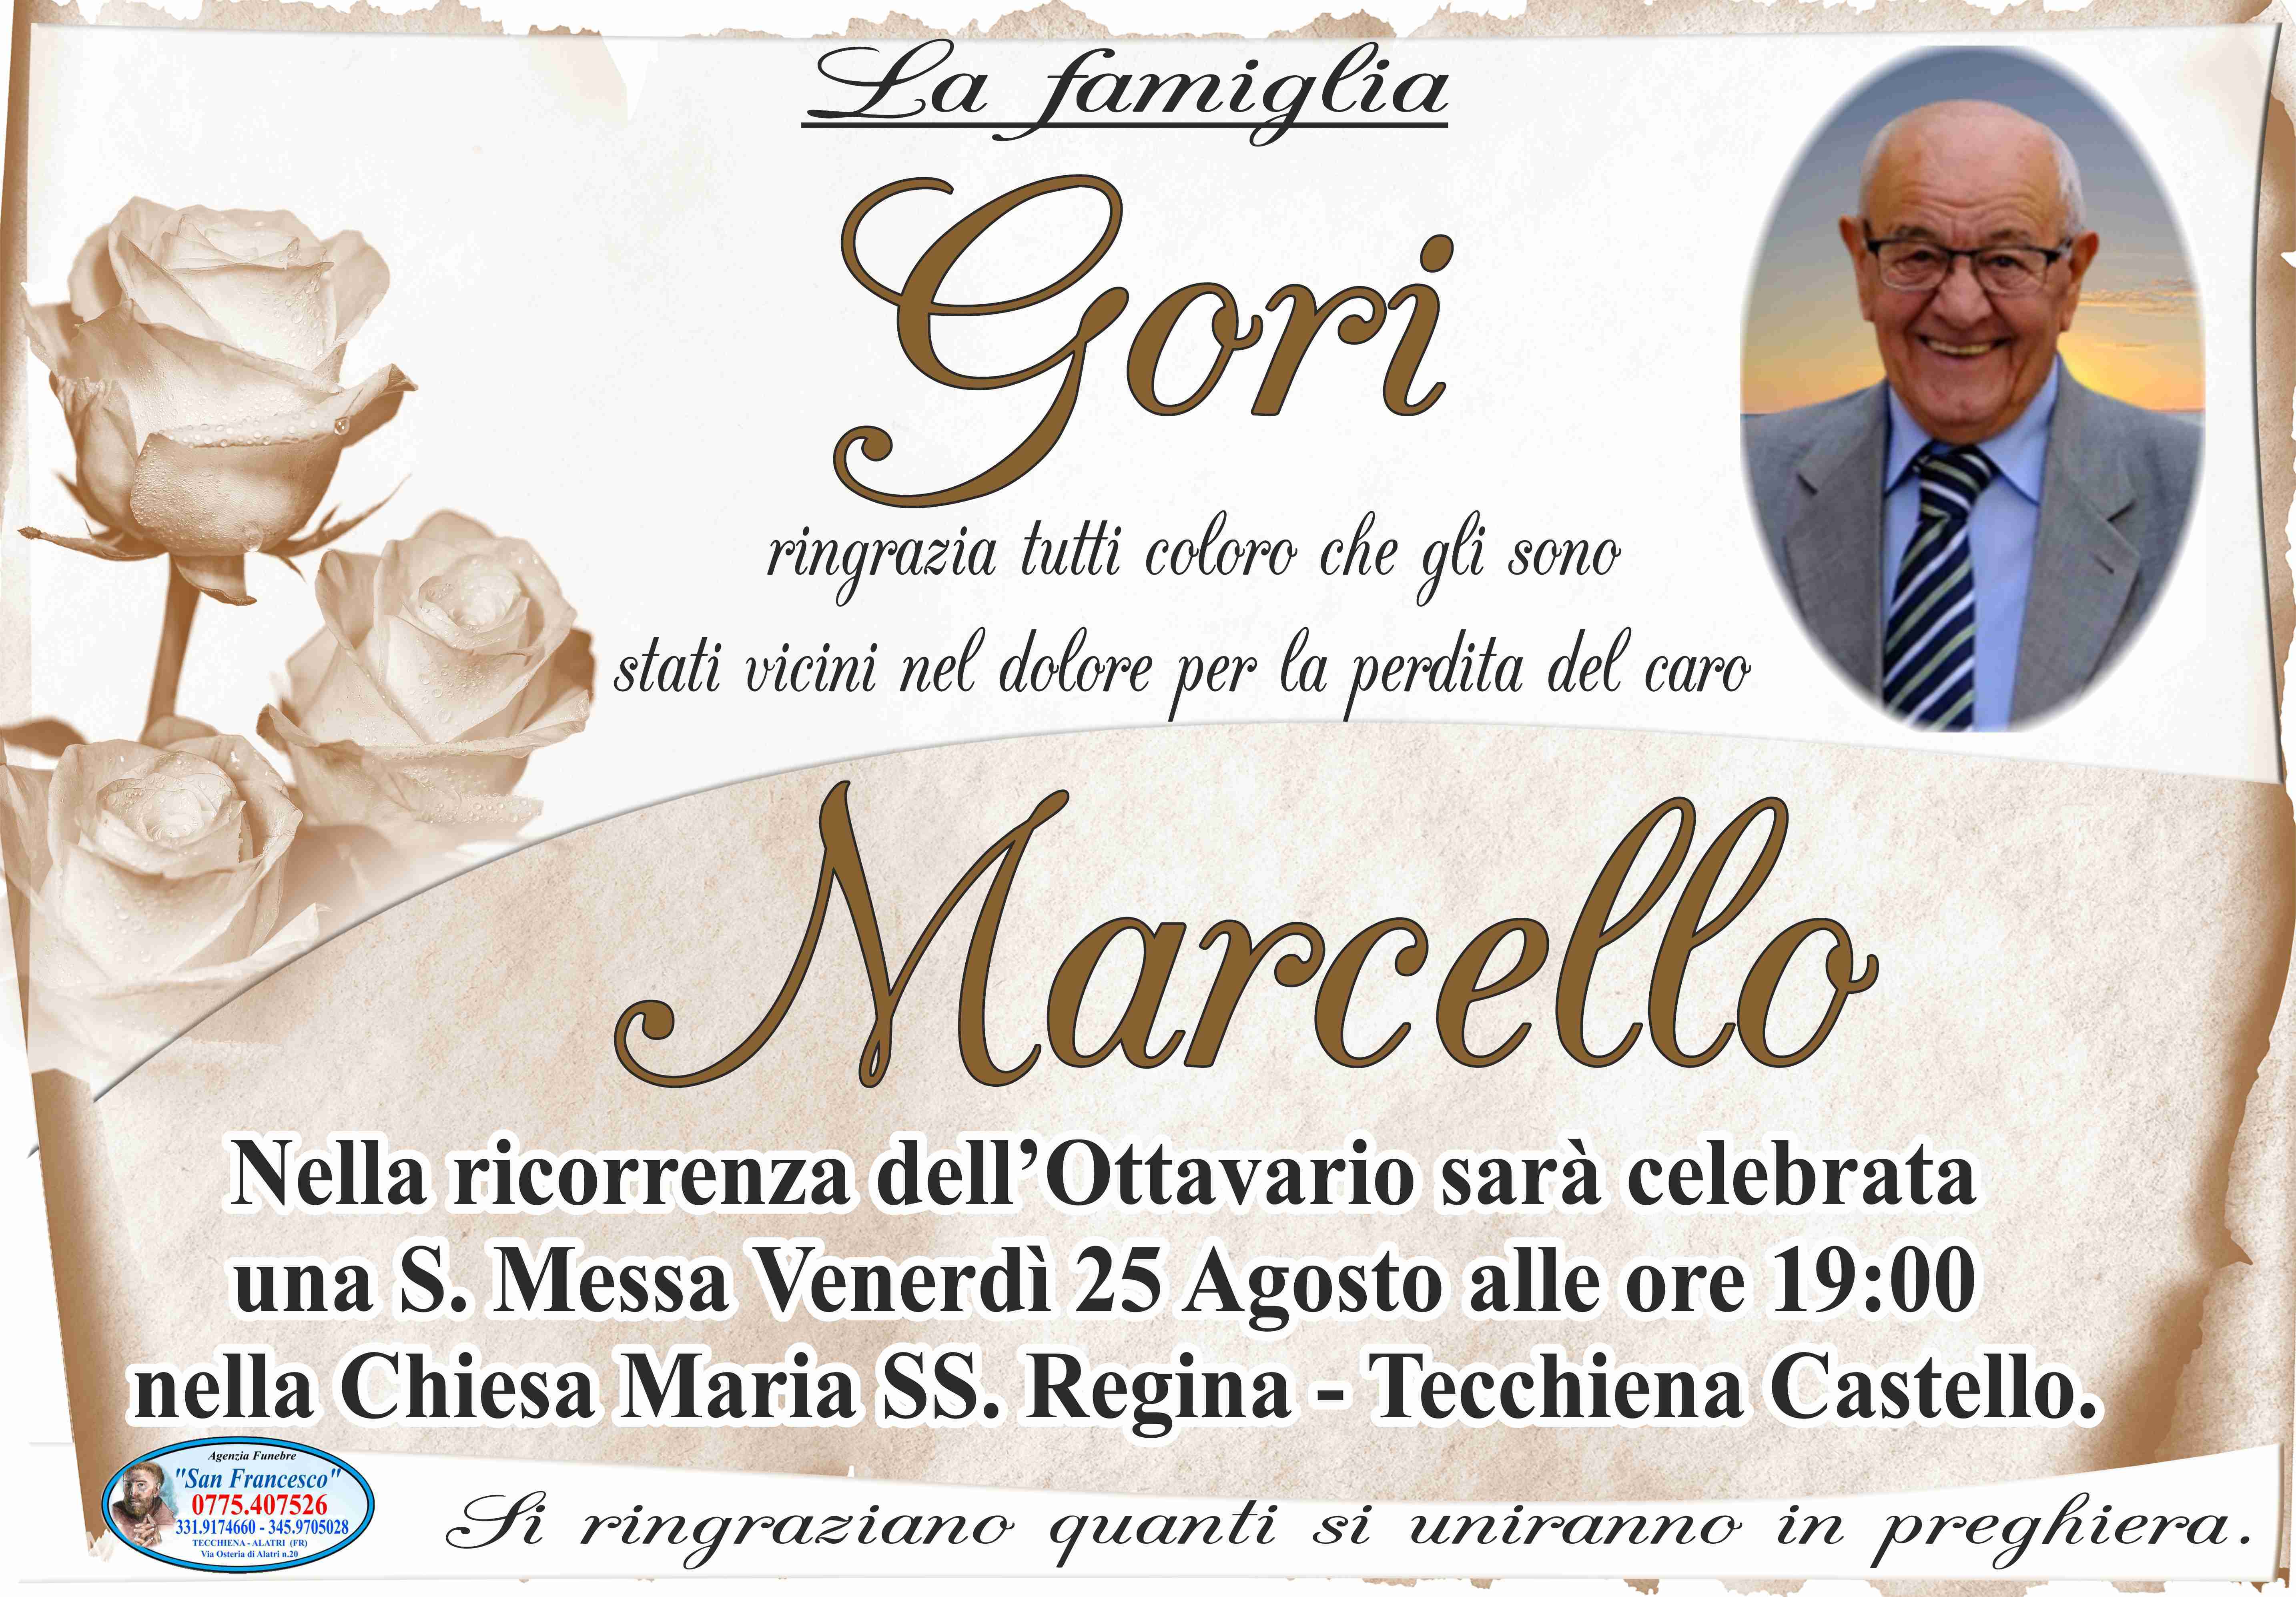 Marcello Gori